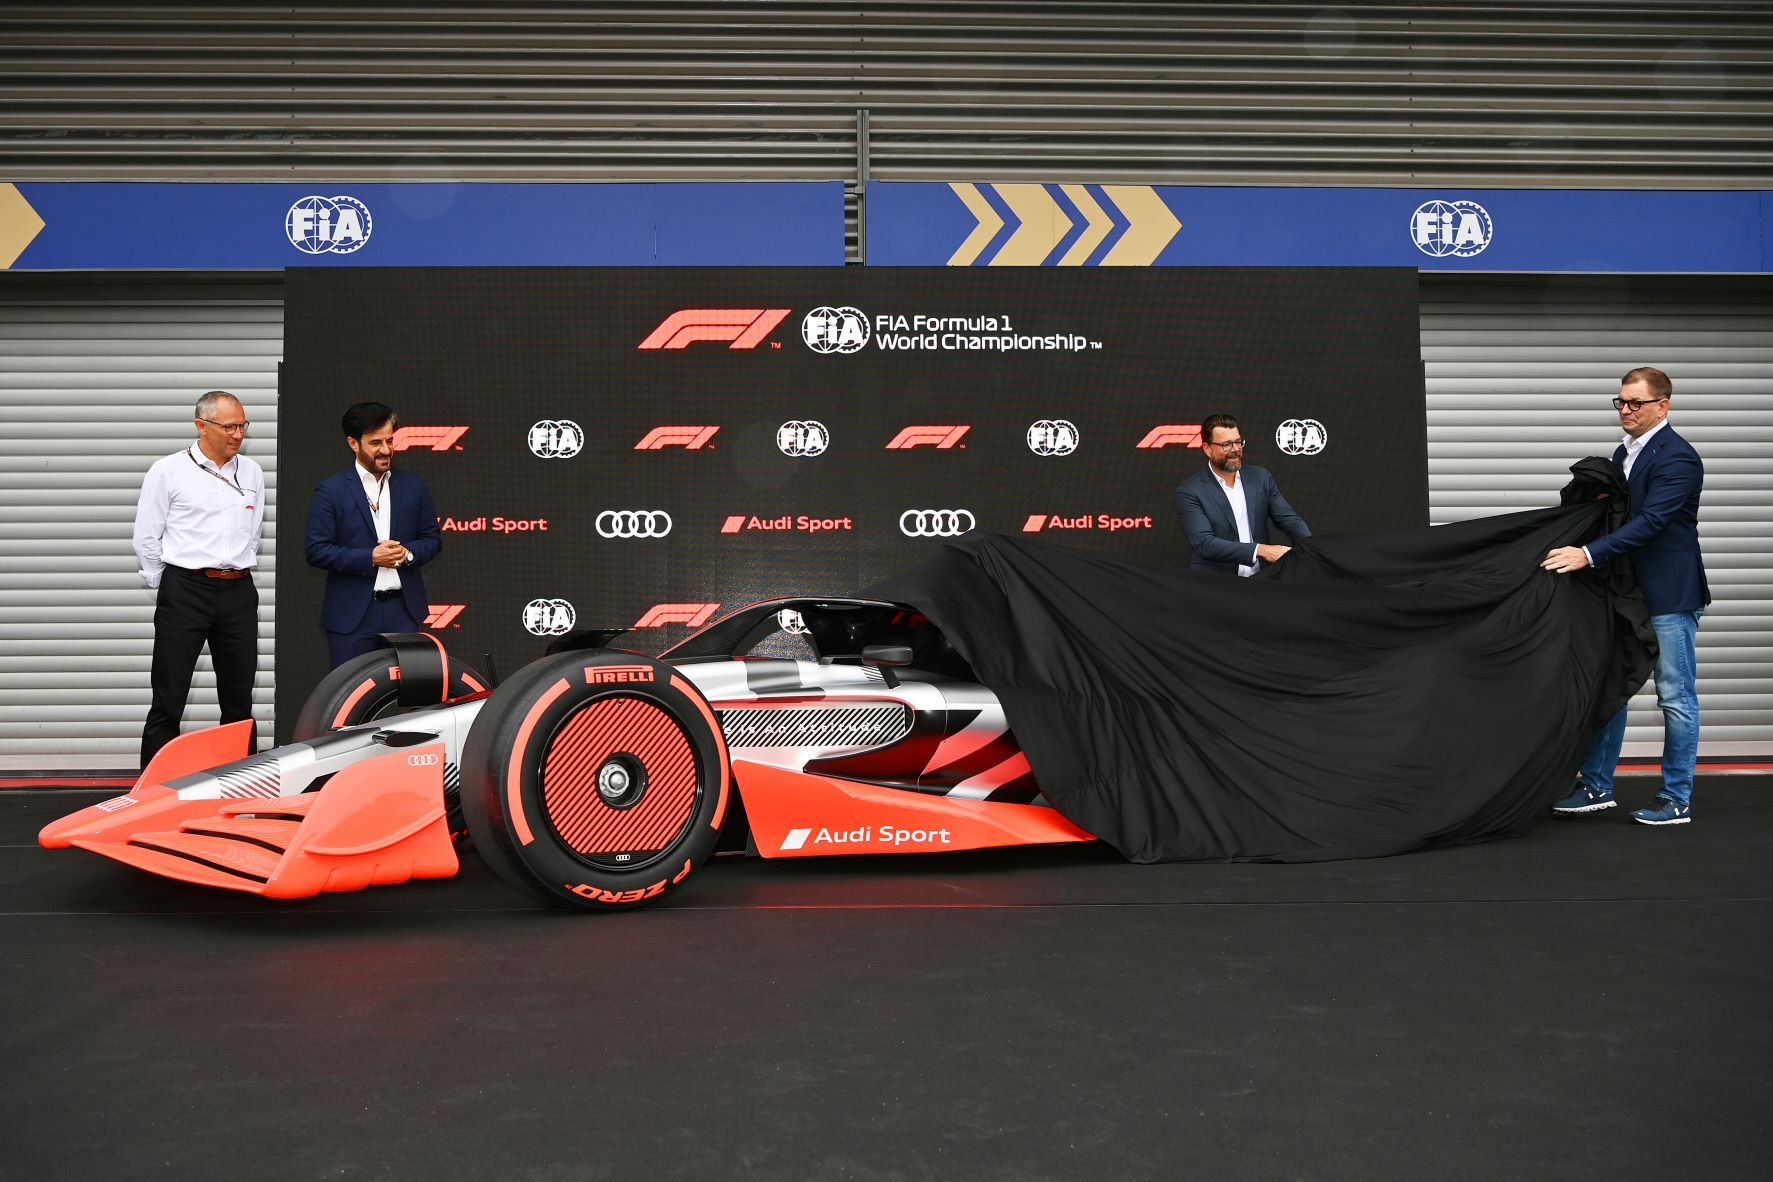 Audi Sport and Sauber F1 unveil the prototype Audi Sport F1 racecar